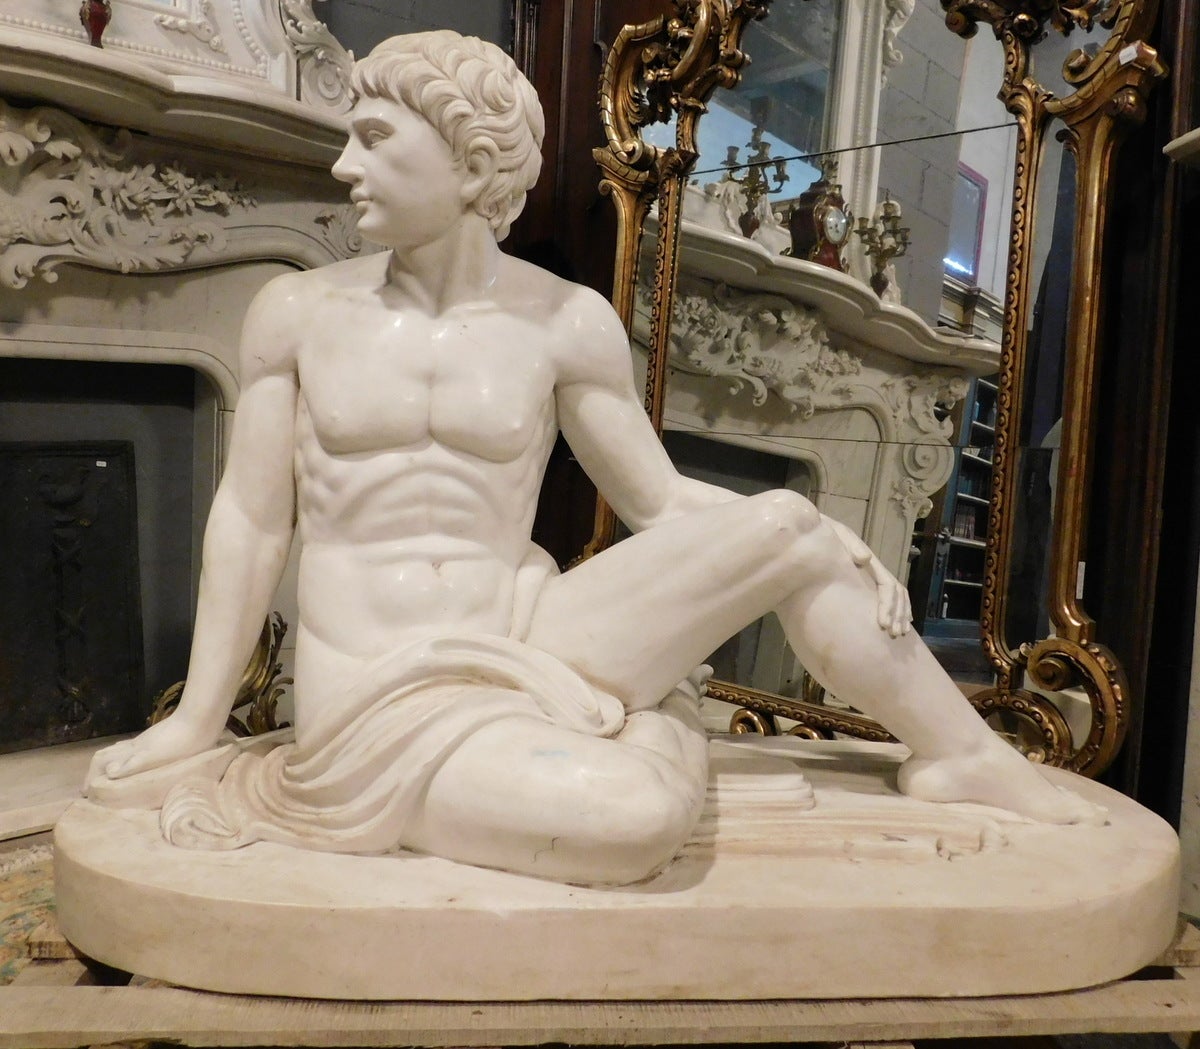 Große, ganzfigurige Skulptur eines römischen Mannes, sitzende Figur mit Stofftuch, alles handgeschnitzt aus kostbarem weißem Carrara-Marmor, um 1930 in Italien entstanden.
Sehr reichhaltig und von exquisiter Verarbeitung, kann es einen Innenhof,